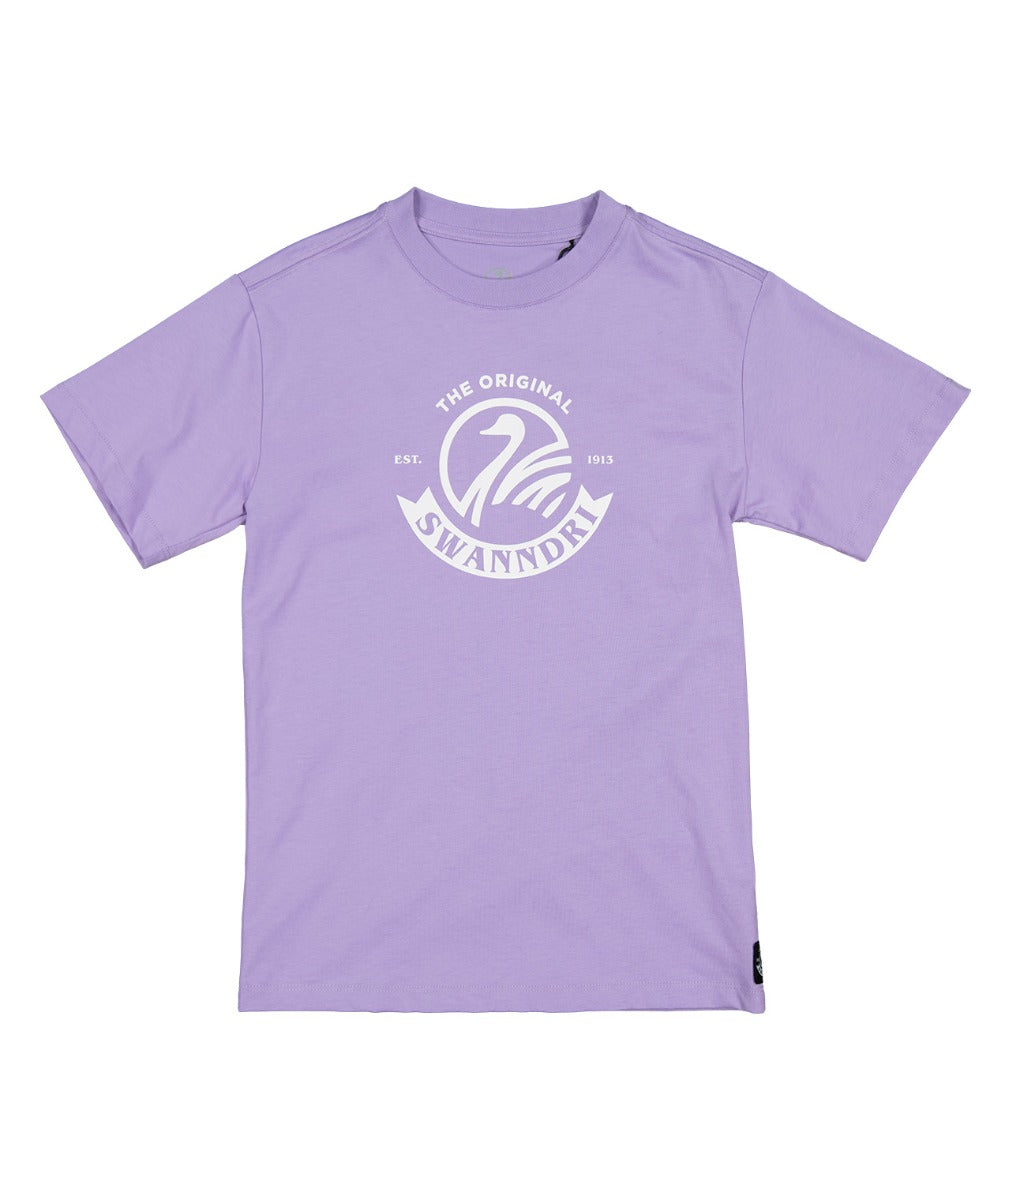 Kids Original V2 T-Shirt | Lavender/White - Swanndri - Beechworth Emporium